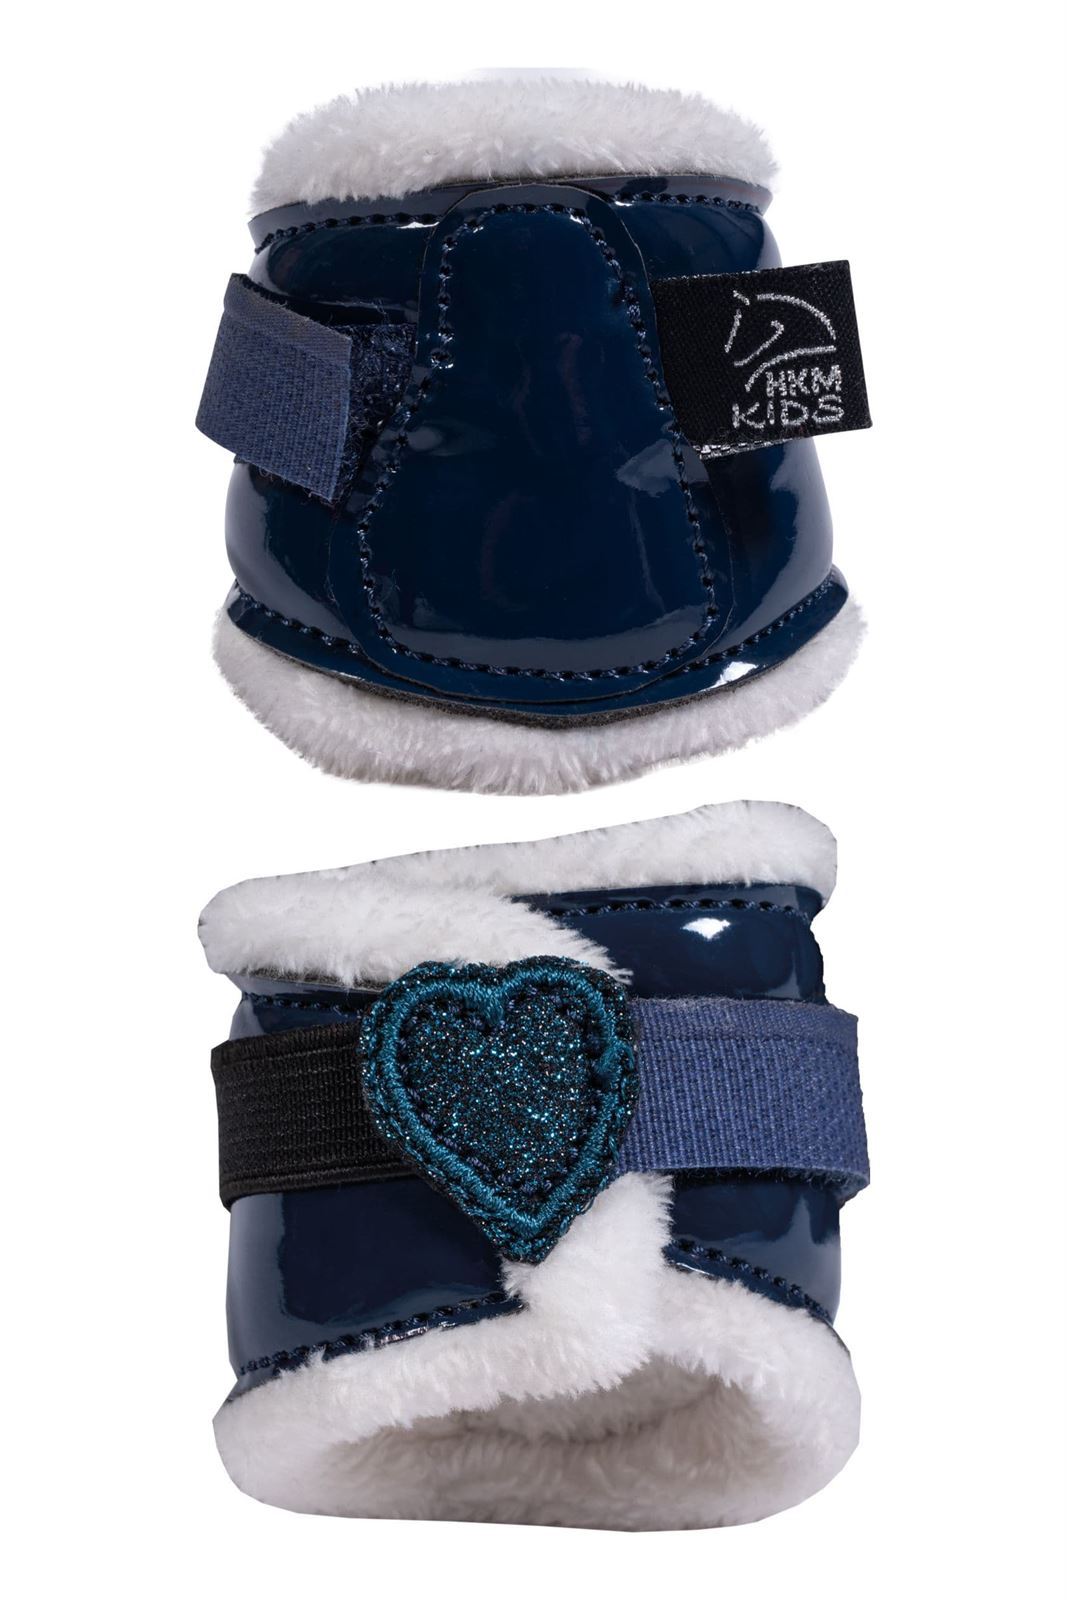 Set accesorios Cuddle pony HKM Sports Equipment Mantilla, orejeras, vendas, protectores y campanas color azul marino - Imagen 5